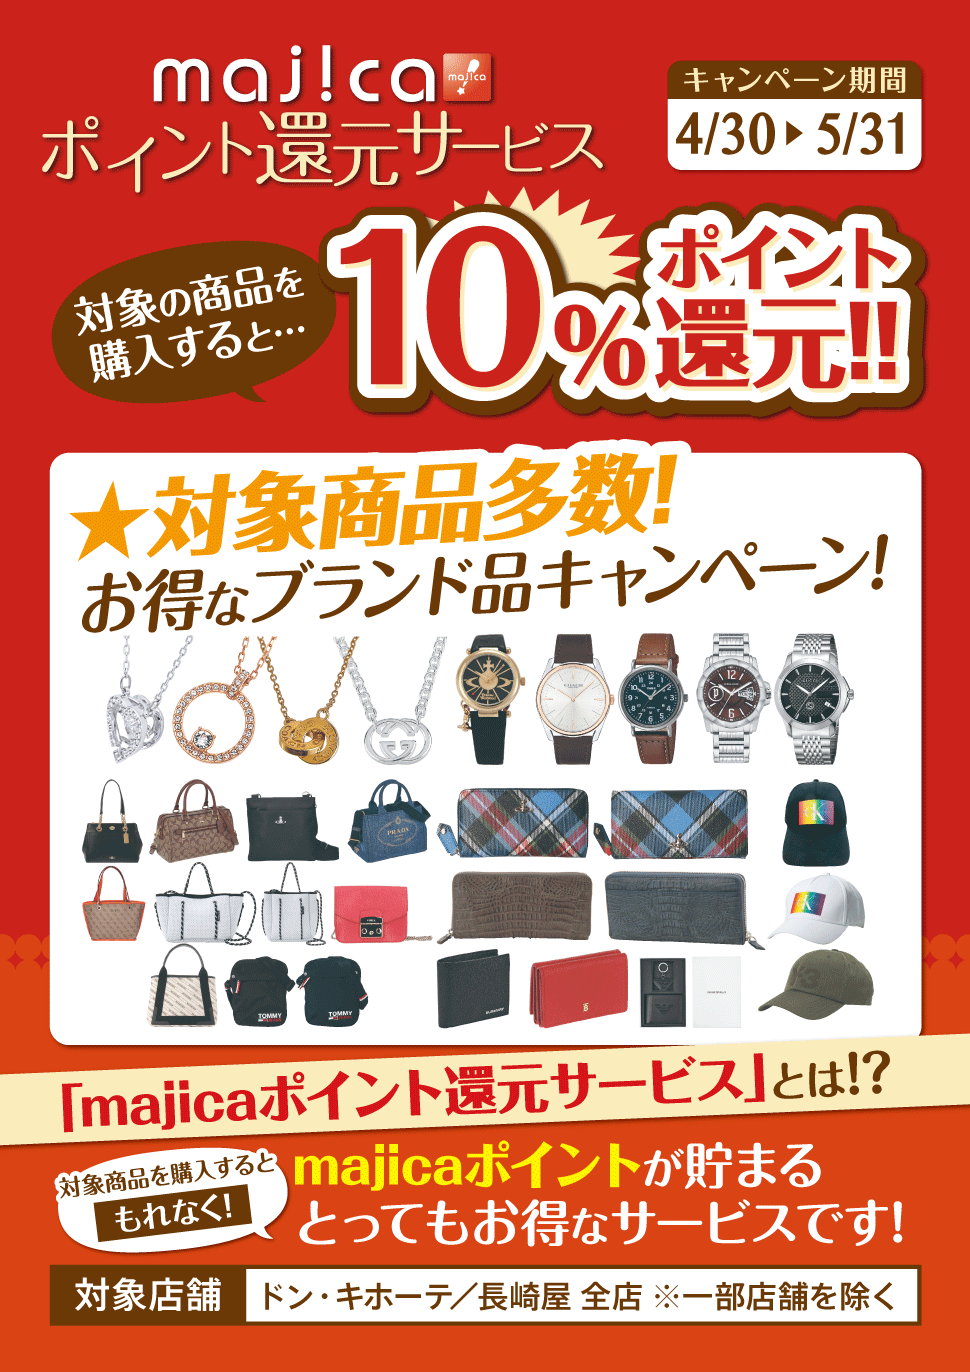 majicaポイント還元サービス「ブランド品キャンペーン」